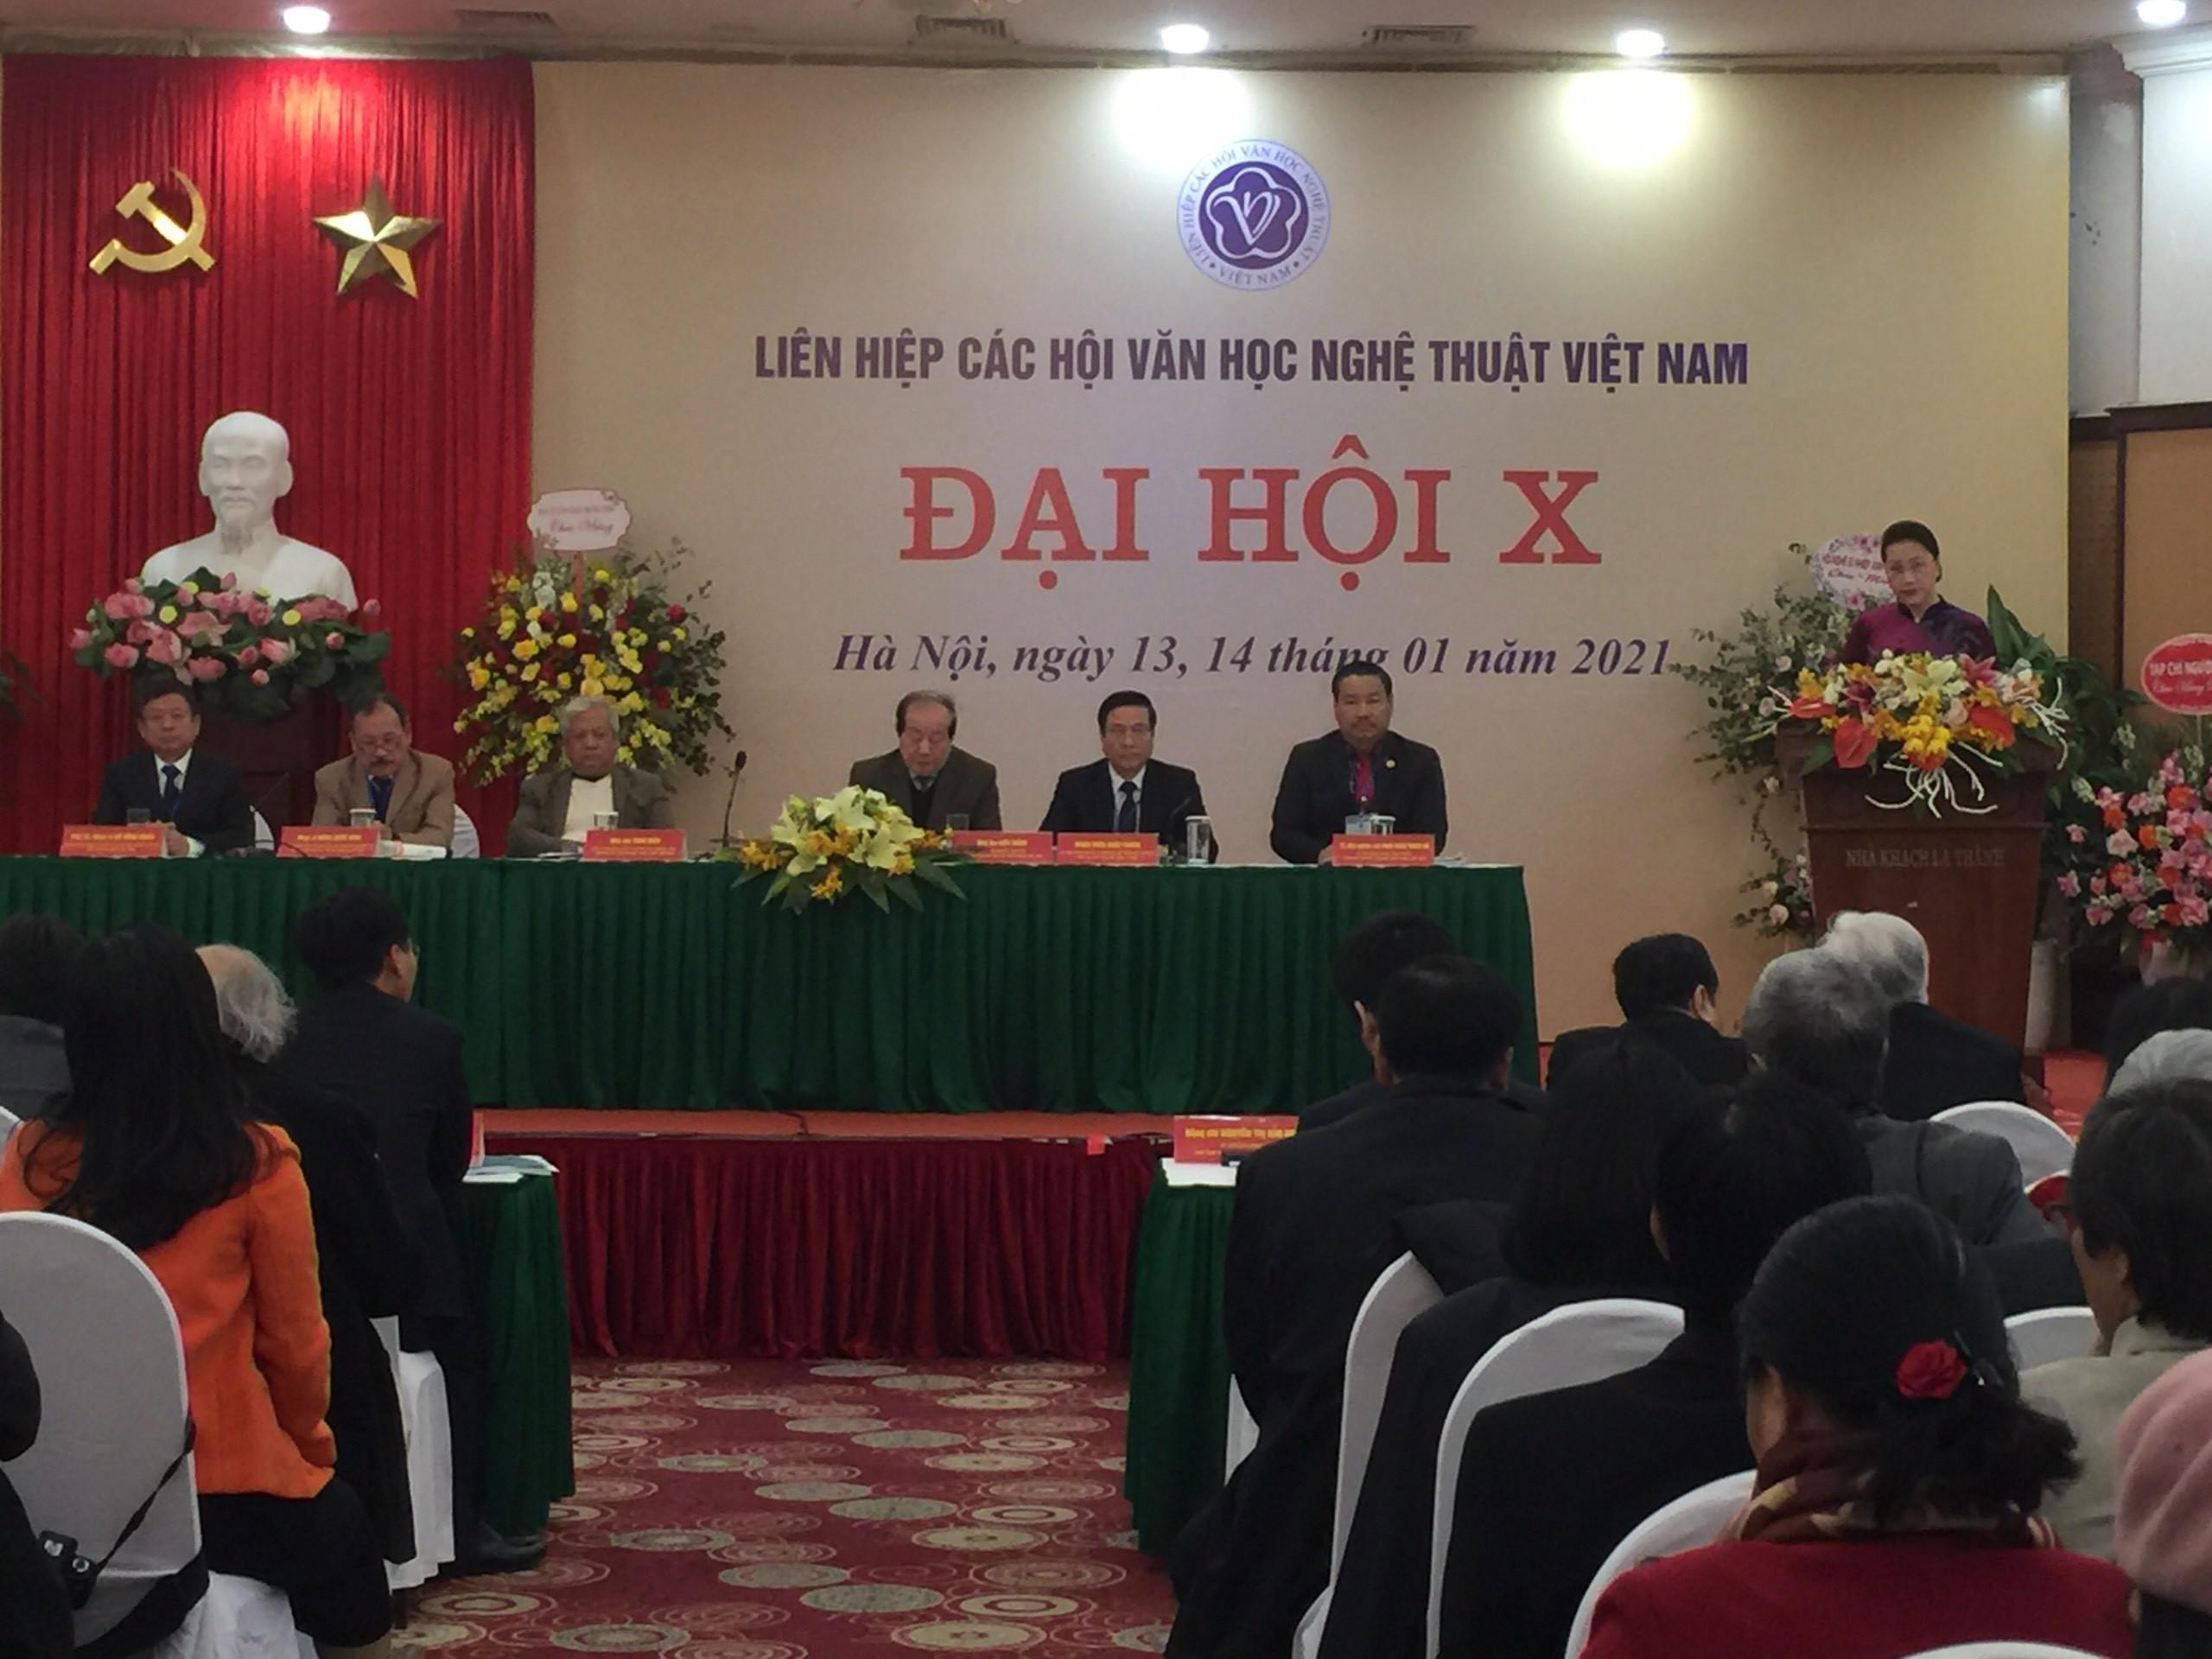 Chủ tịch Quốc hội Nguyễn Thị Kim Ngân tham dự Đại hội Đại biểu toàn quốc Liên hiệp các Hội Văn học Nghệ thuật Việt Nam khóa X - 1